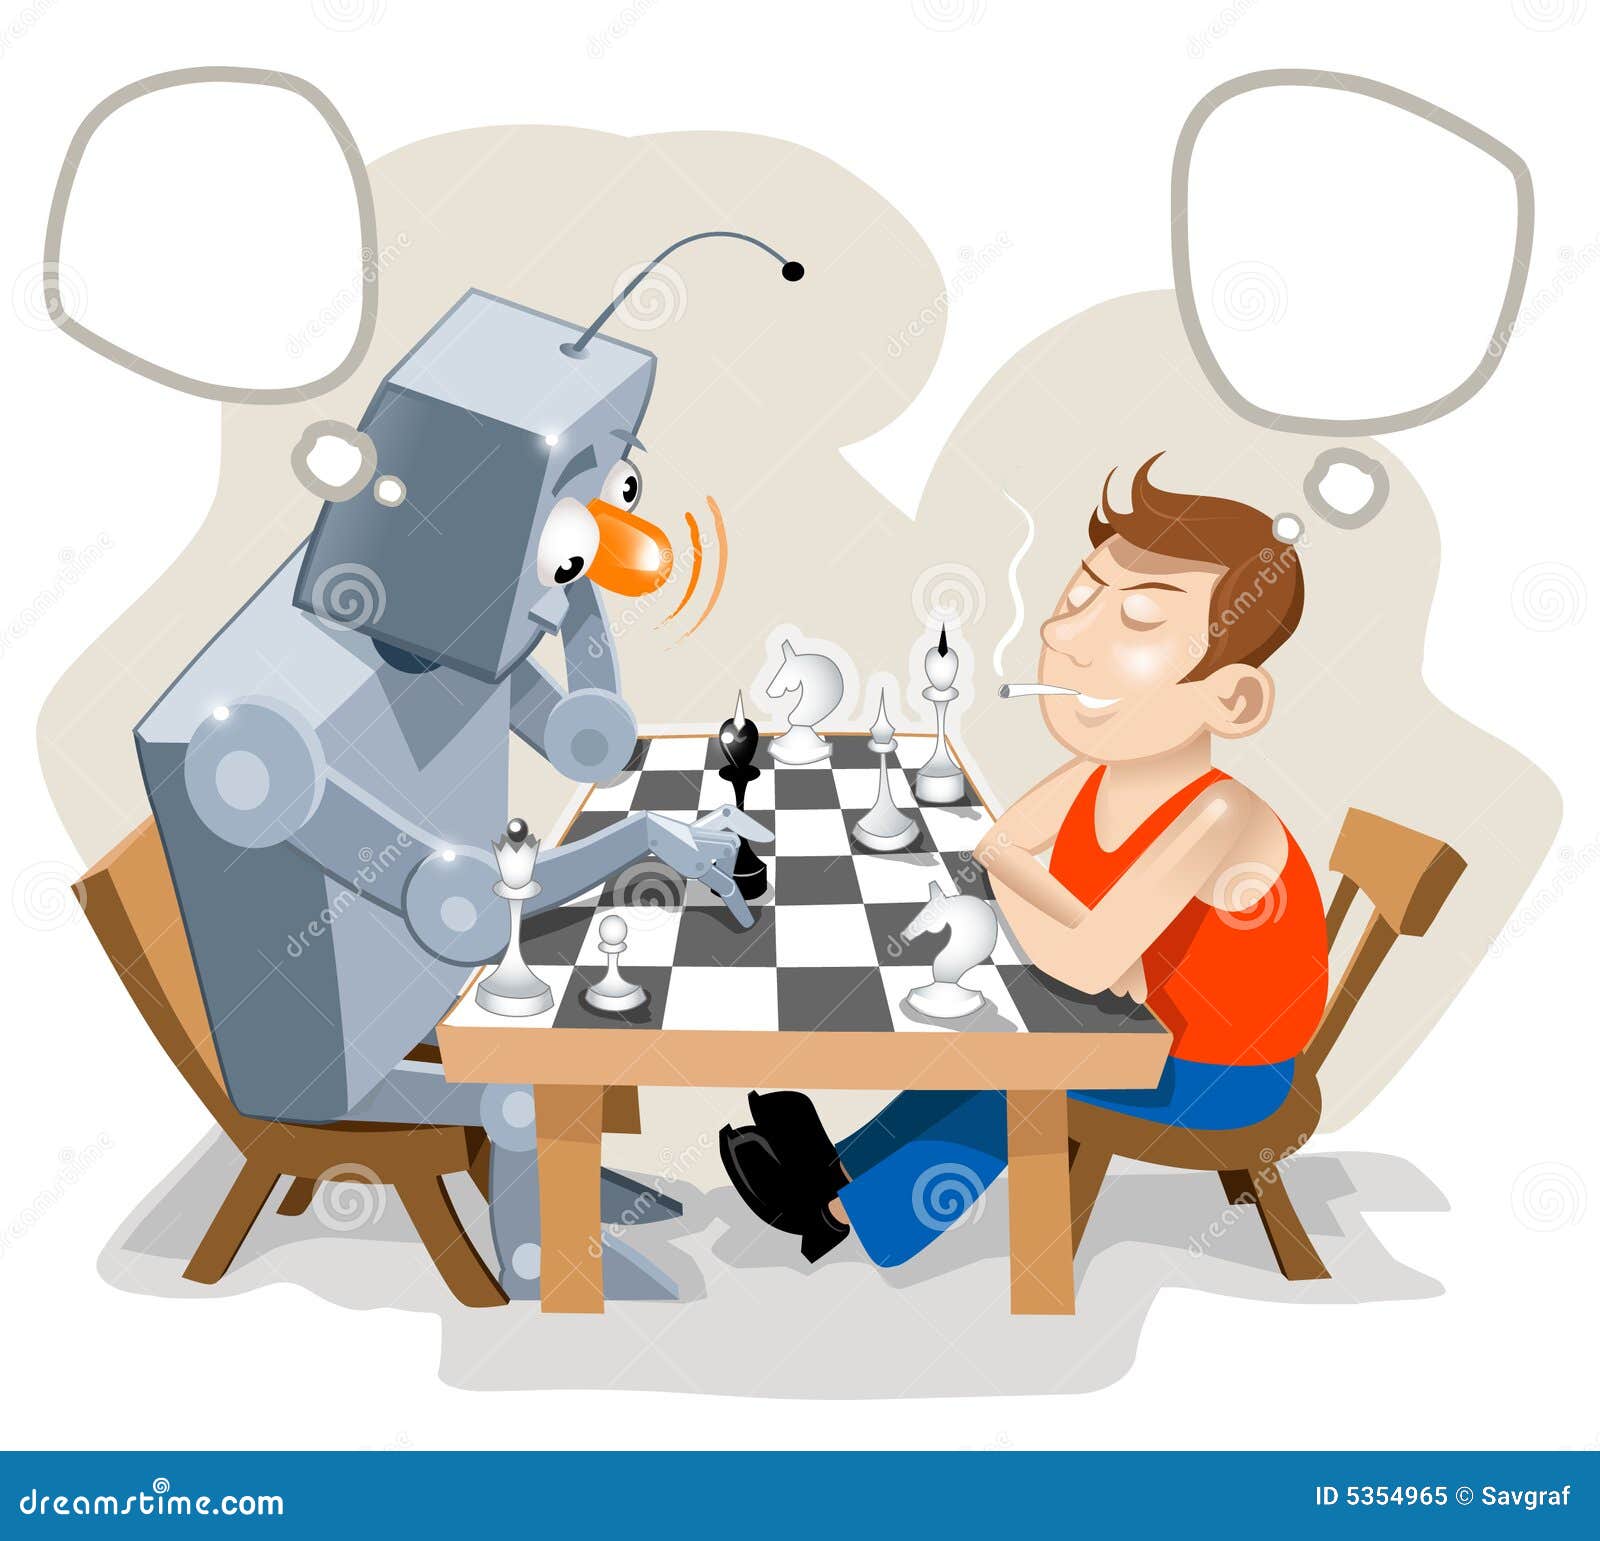 Папа играет робот. Робот играющий в шахматы. Компьютер играющий в шахматы. Люди играющие в шахматы иллюстрация. Робот и человек шахматы.